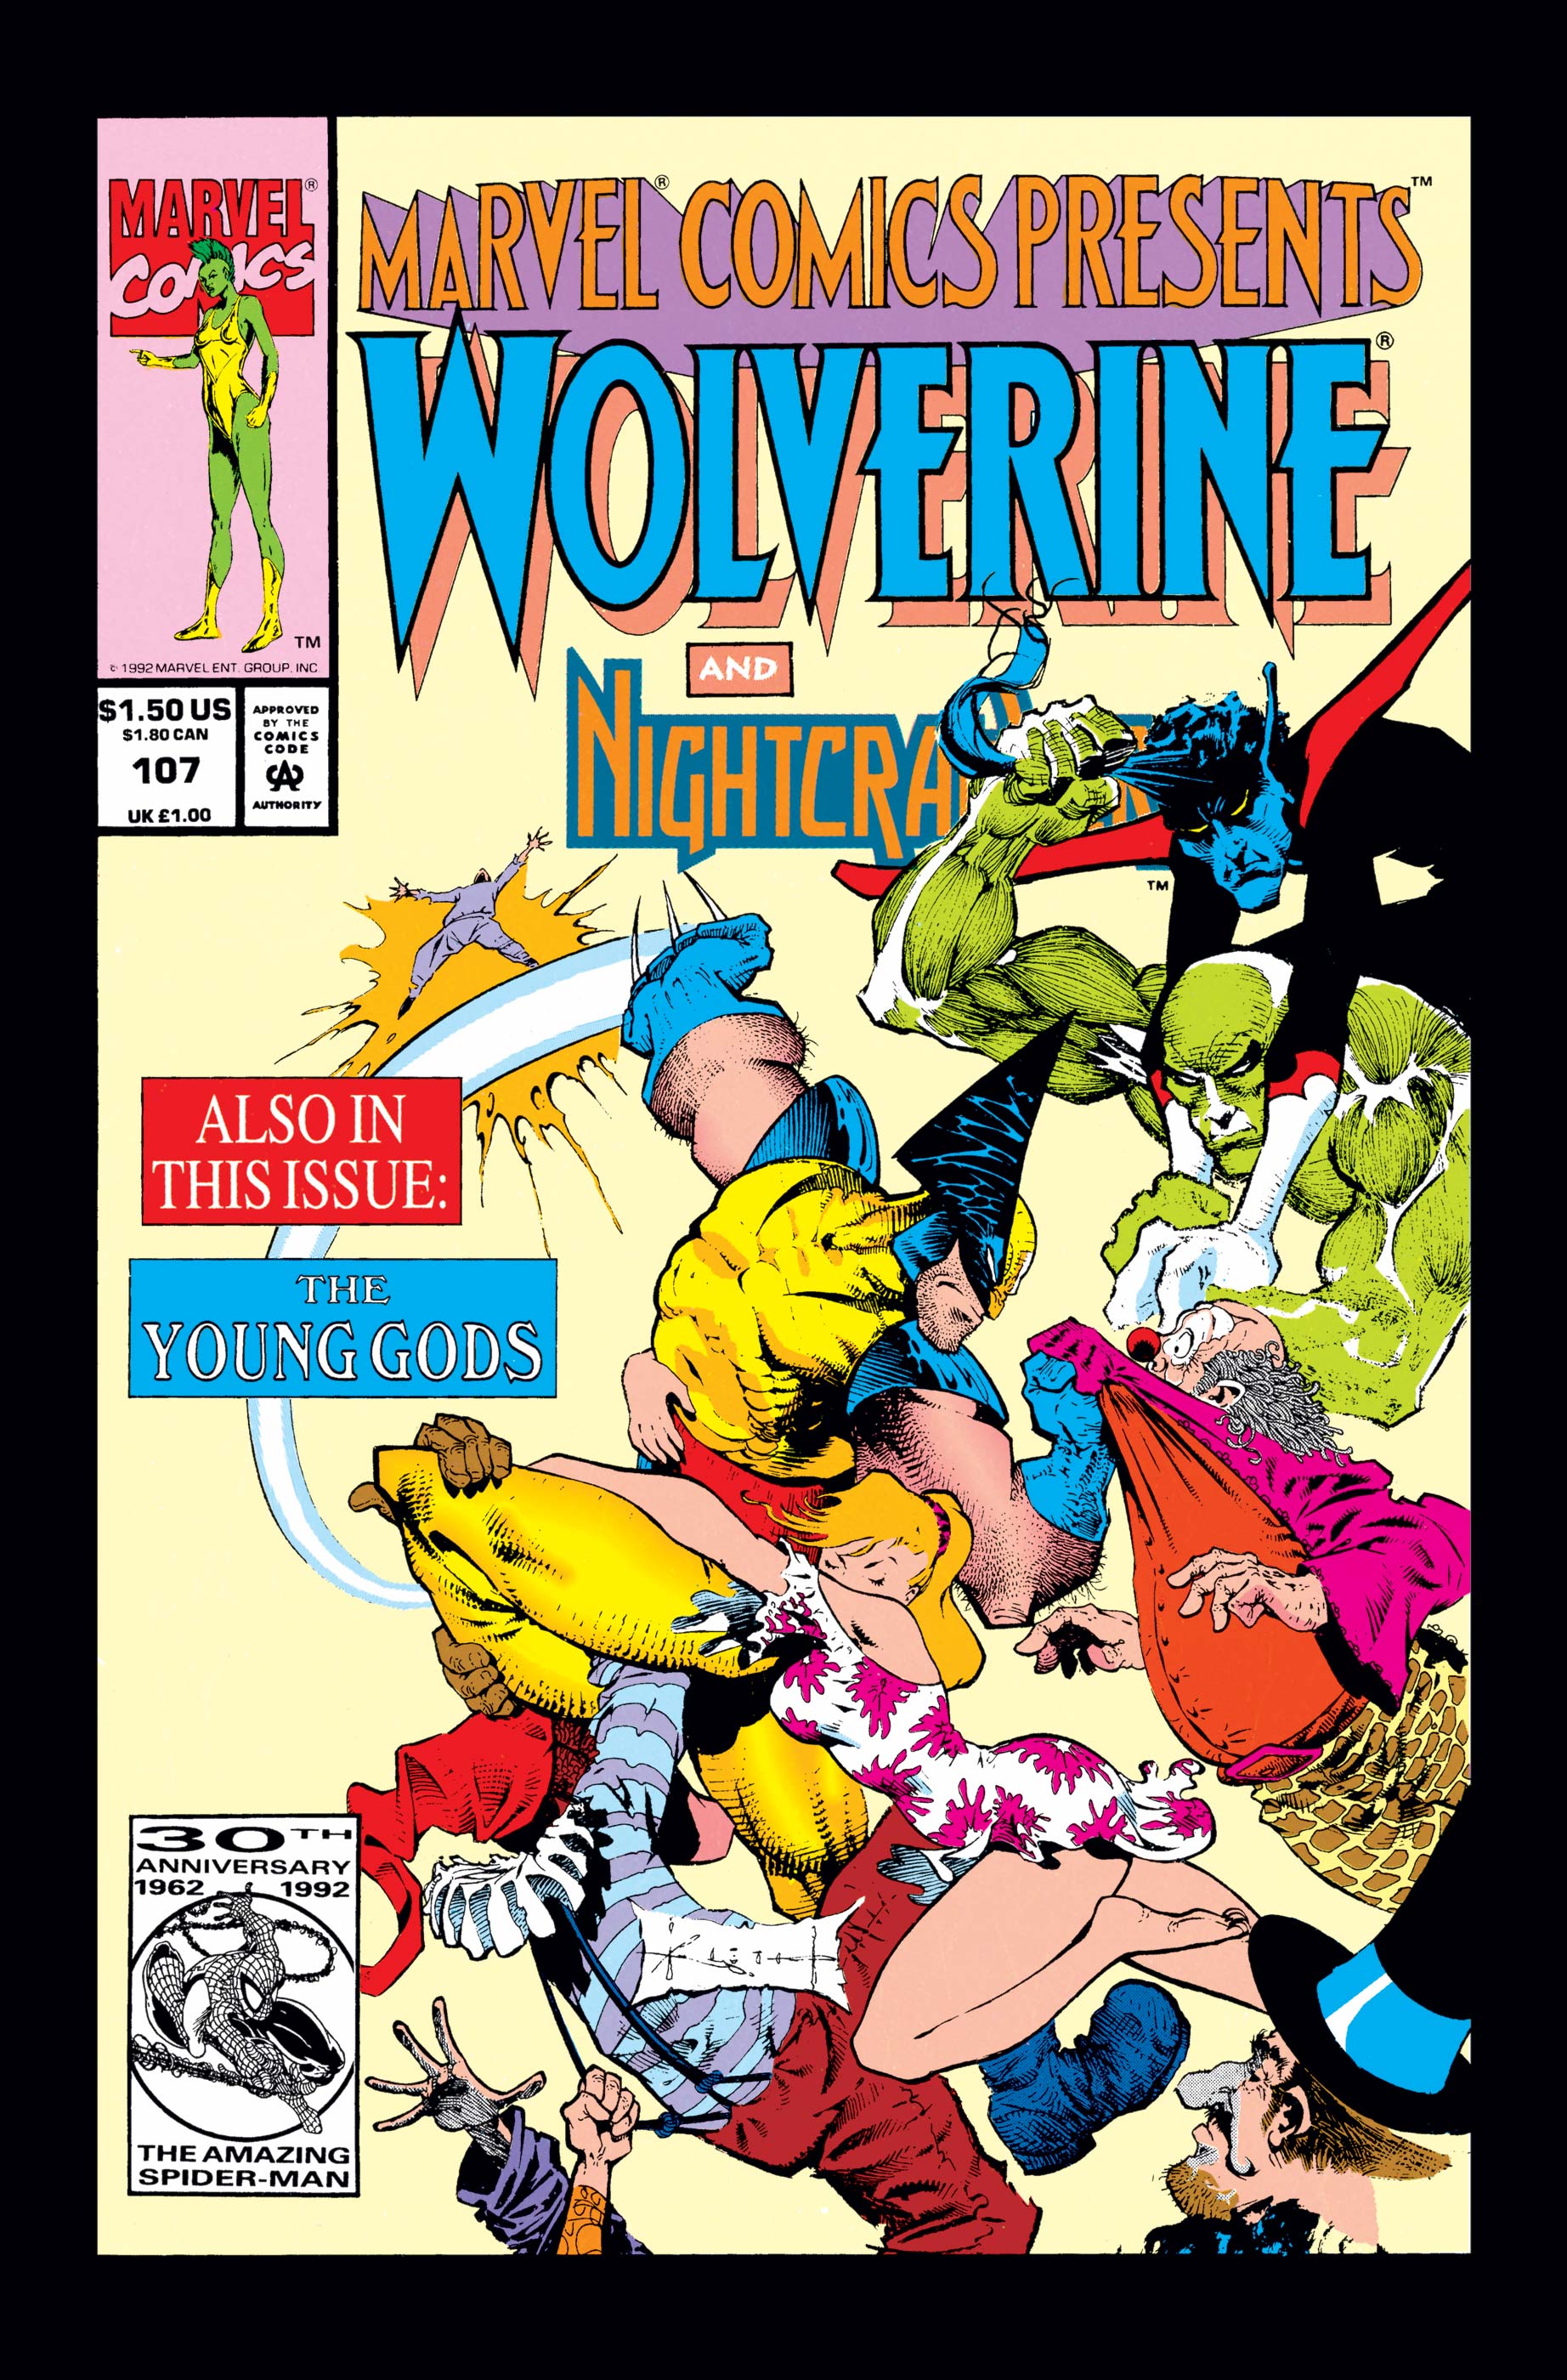 Marvel Comics Presents (1988) #107